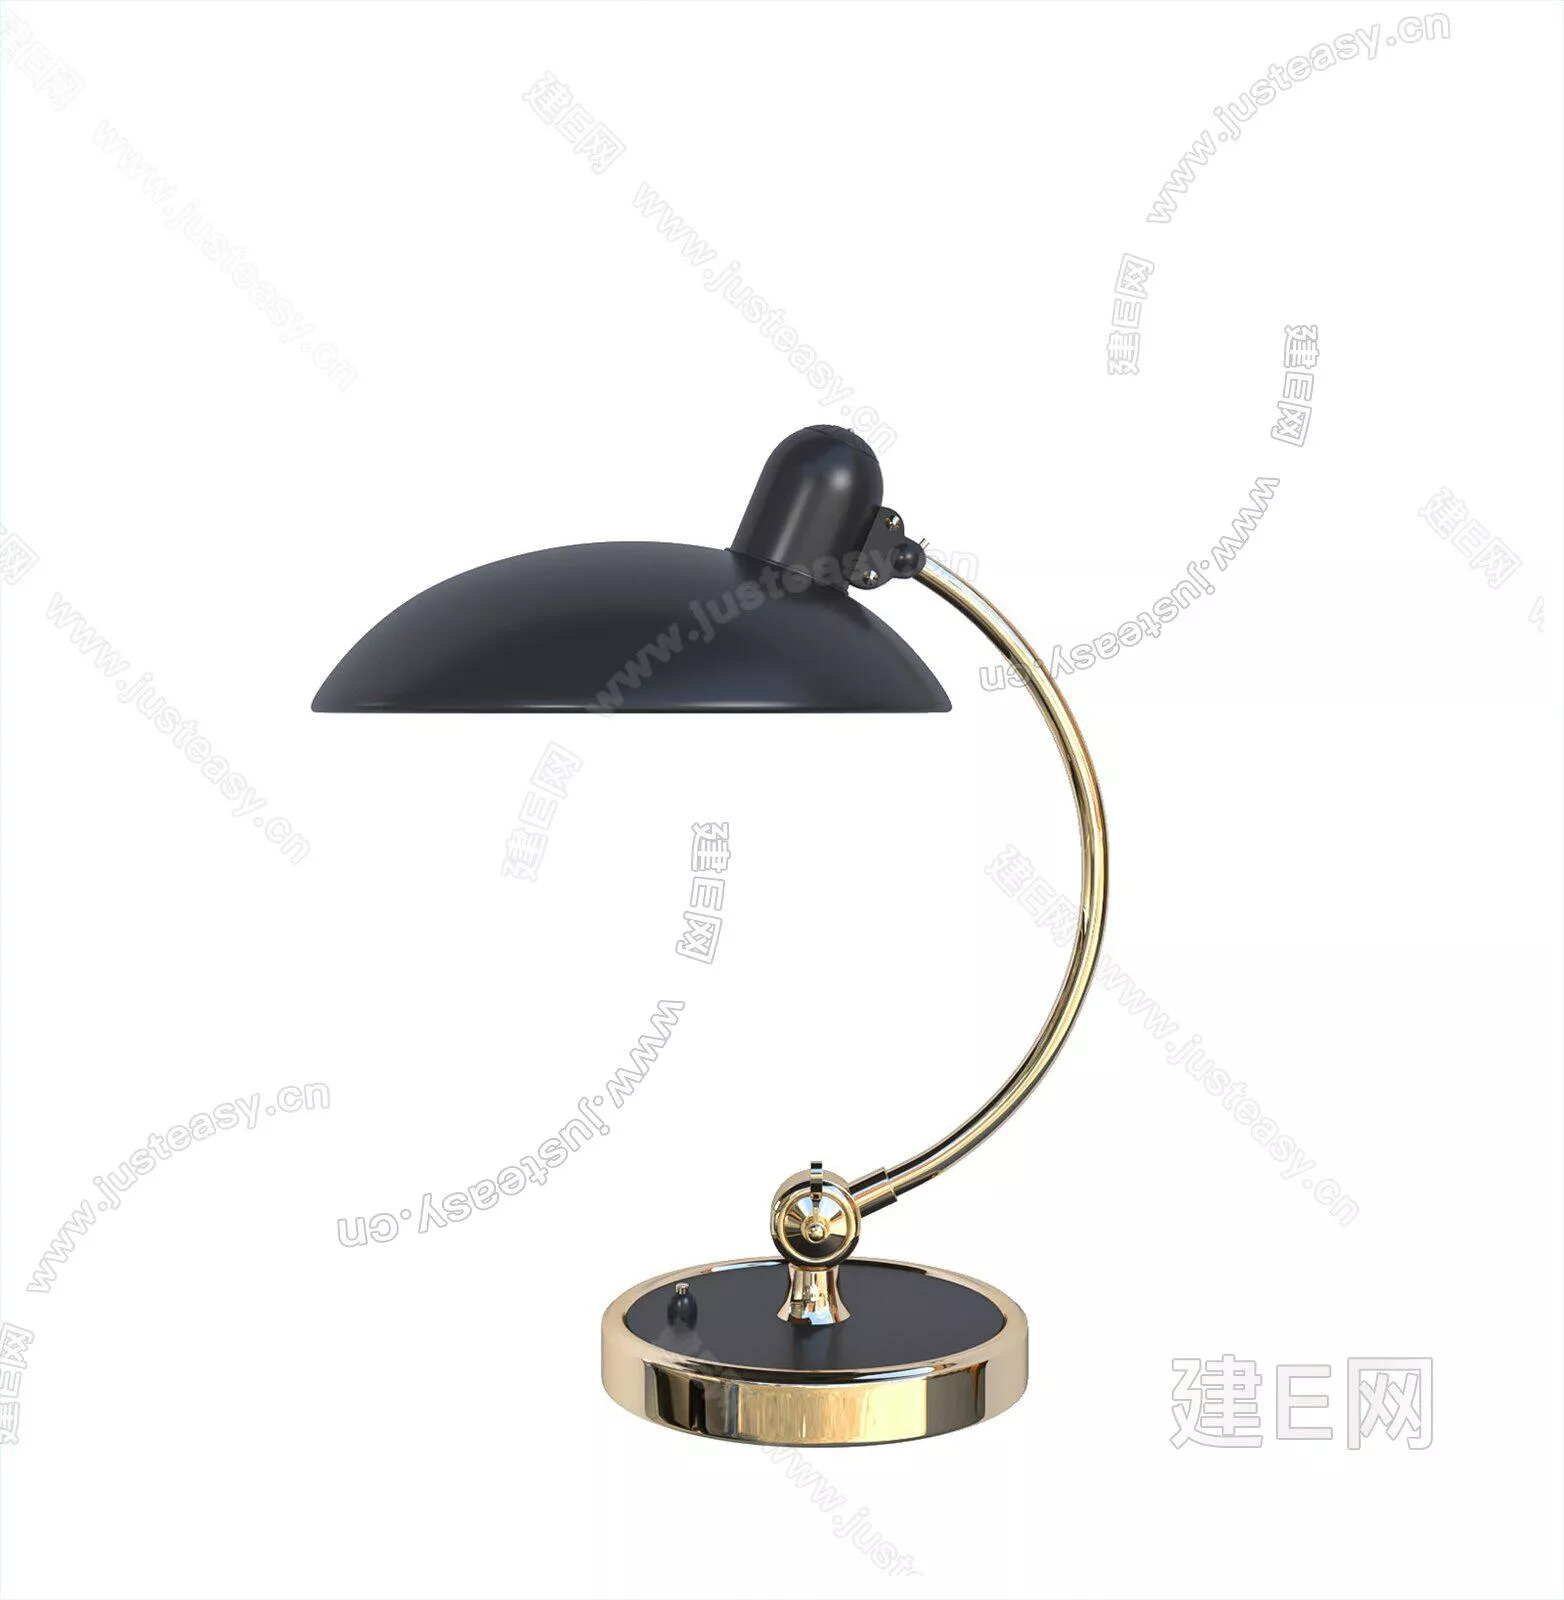 MODERN TABLE LAMP - SKETCHUP 3D MODEL - ENSCAPE - 106646944